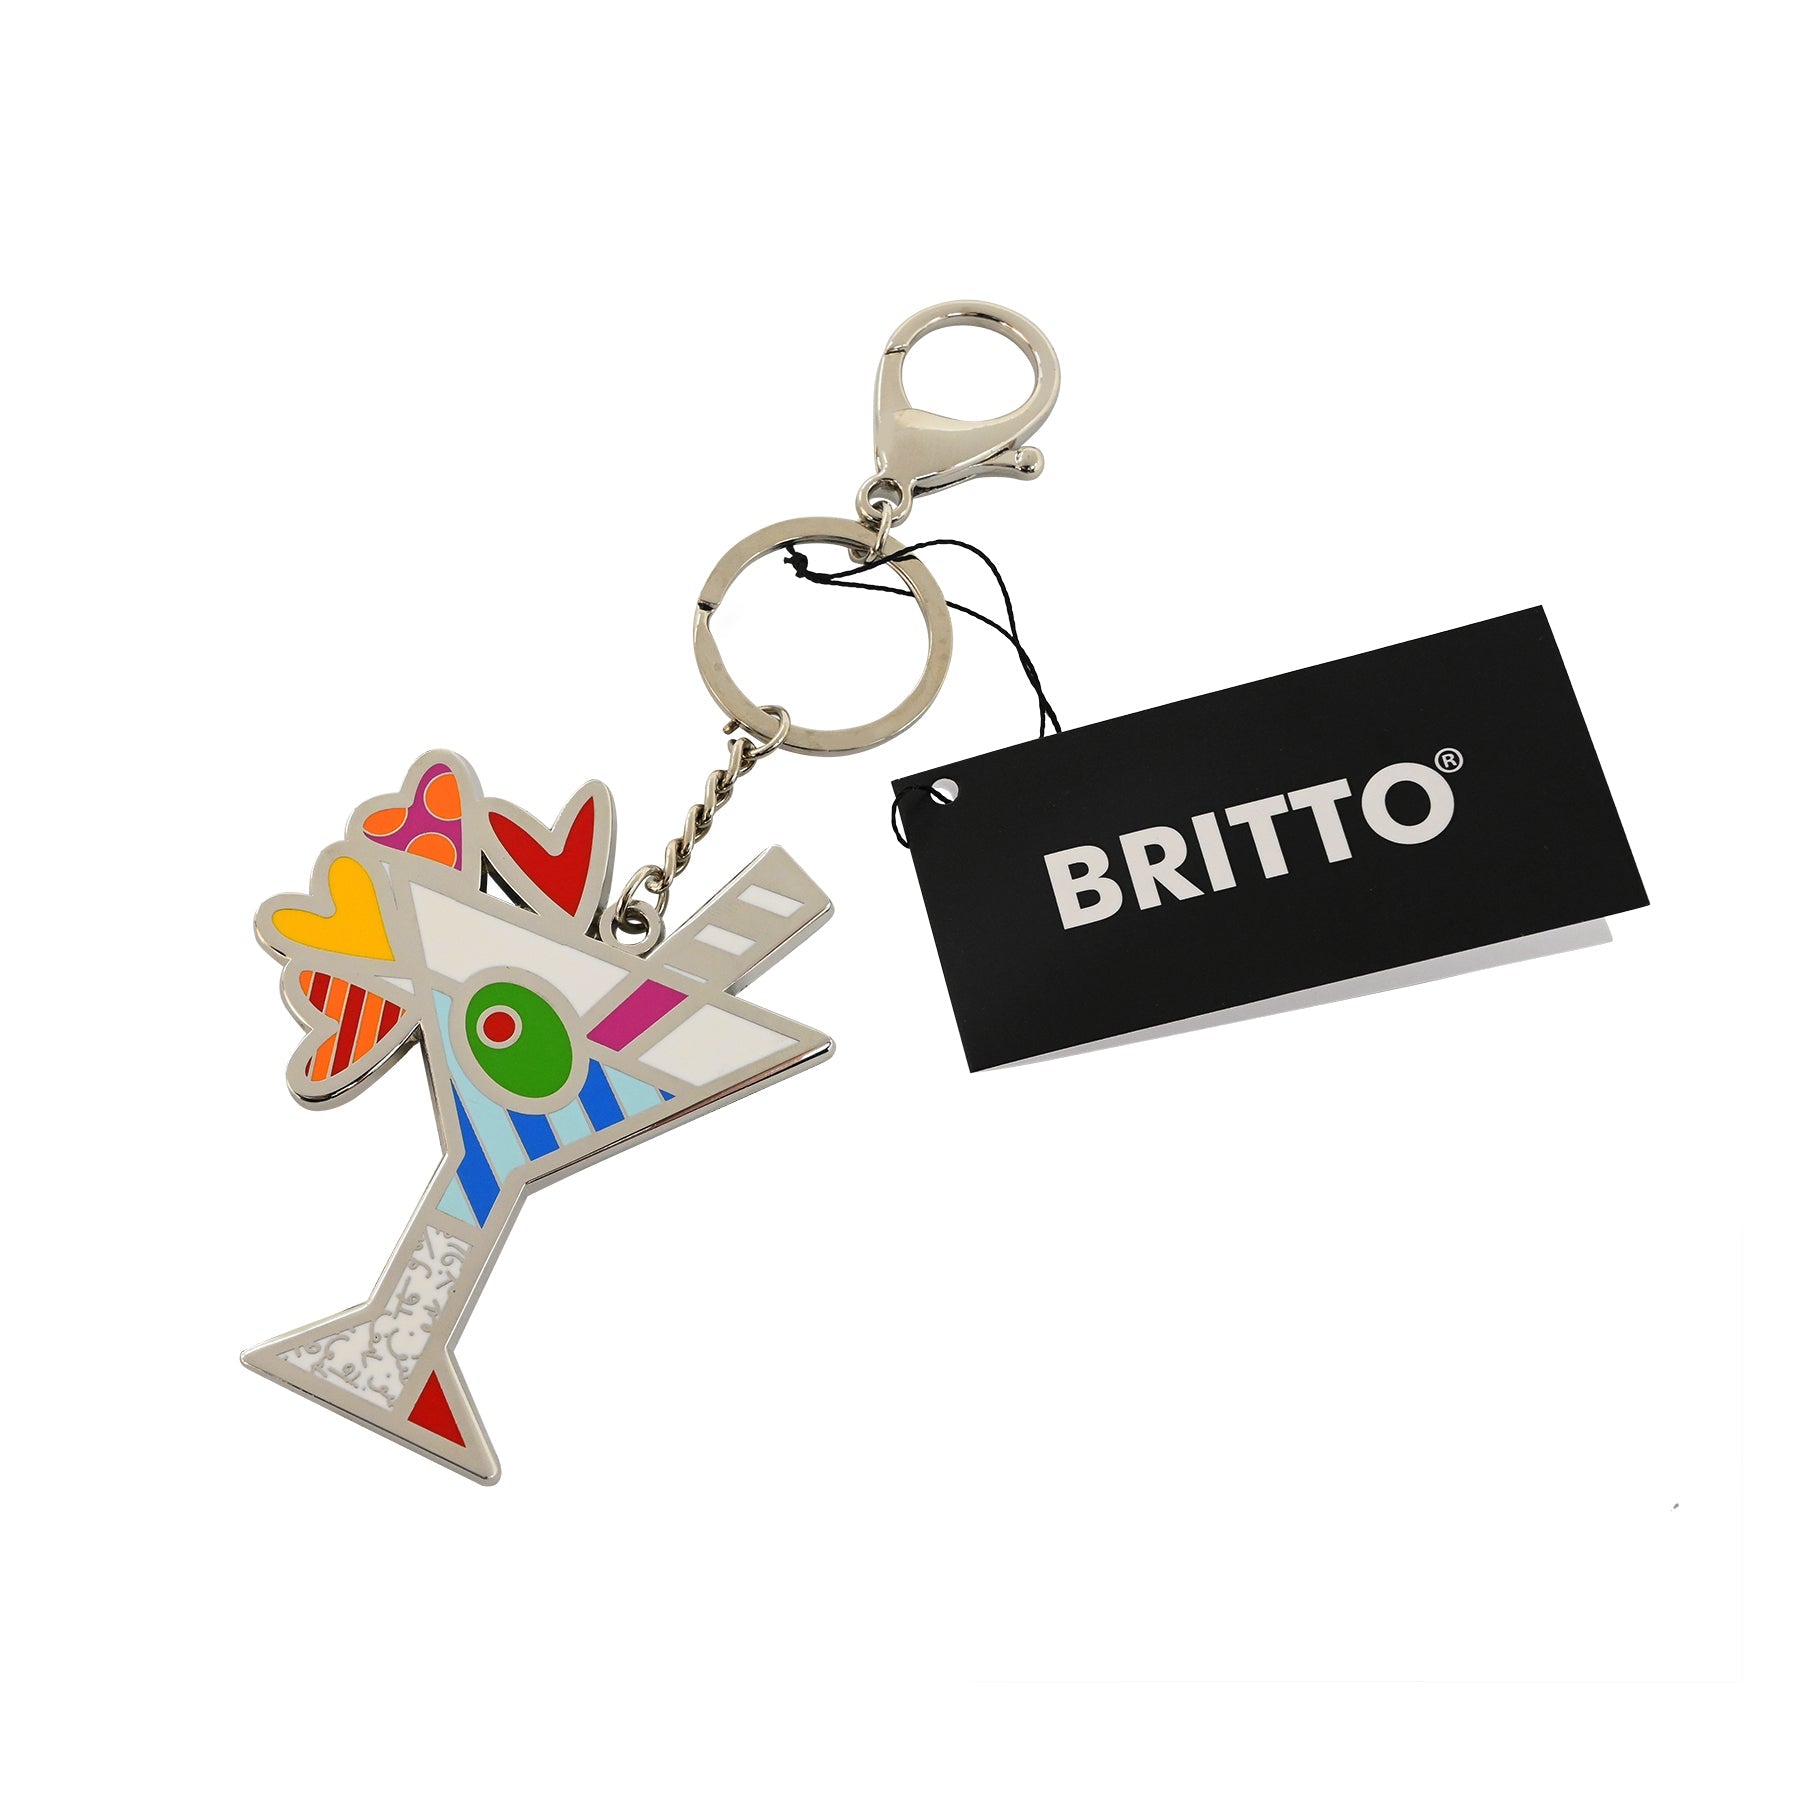 BRITTO® KEYCHAIN & BAG CHARM - MIAMI – Shop Britto